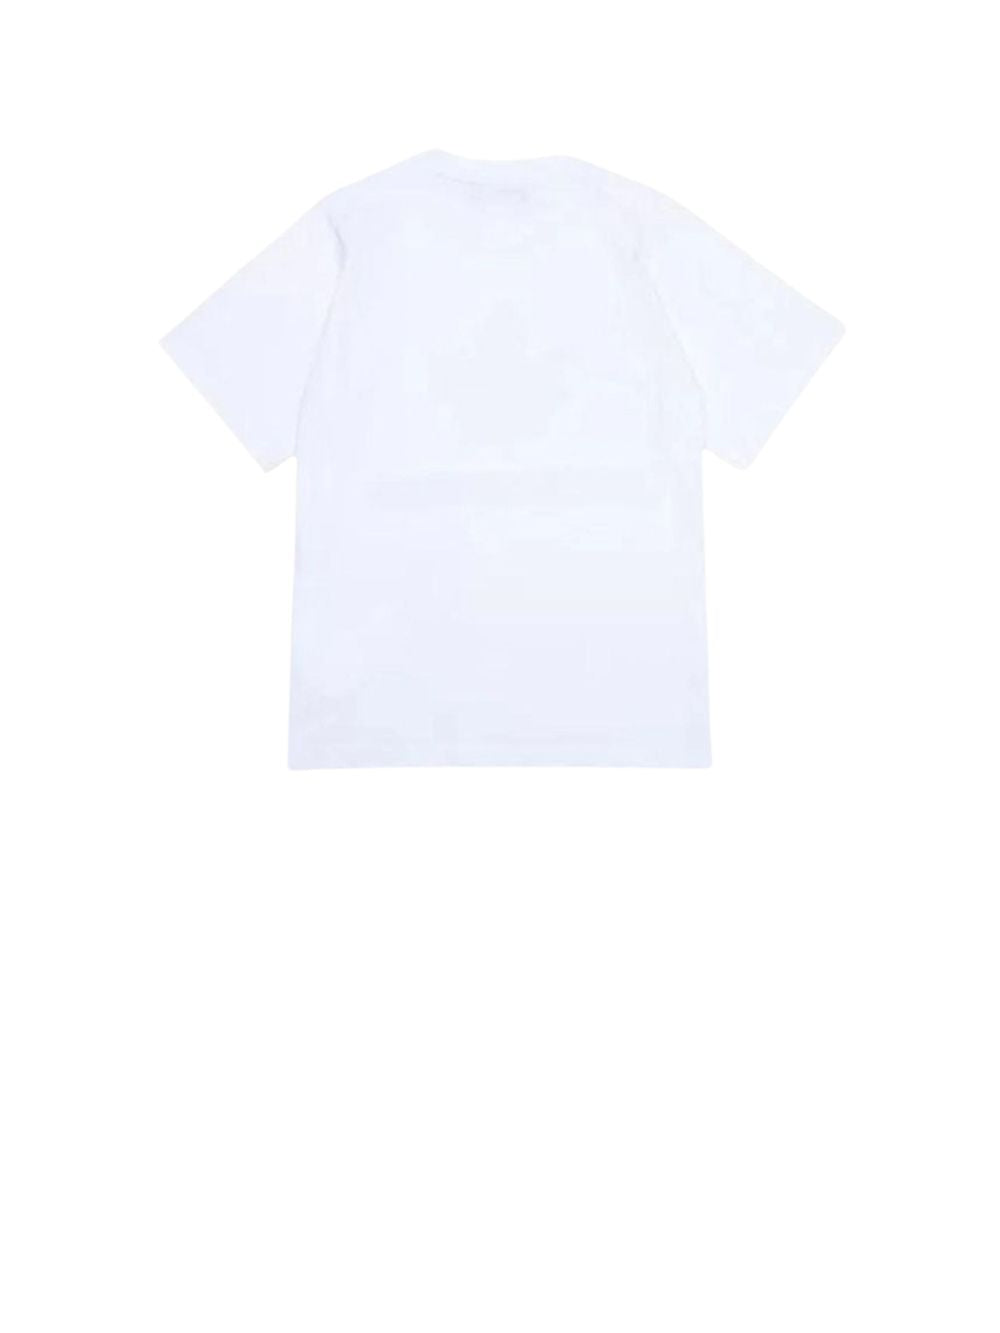 T-shirt Bambino con stampa foglia sul petto